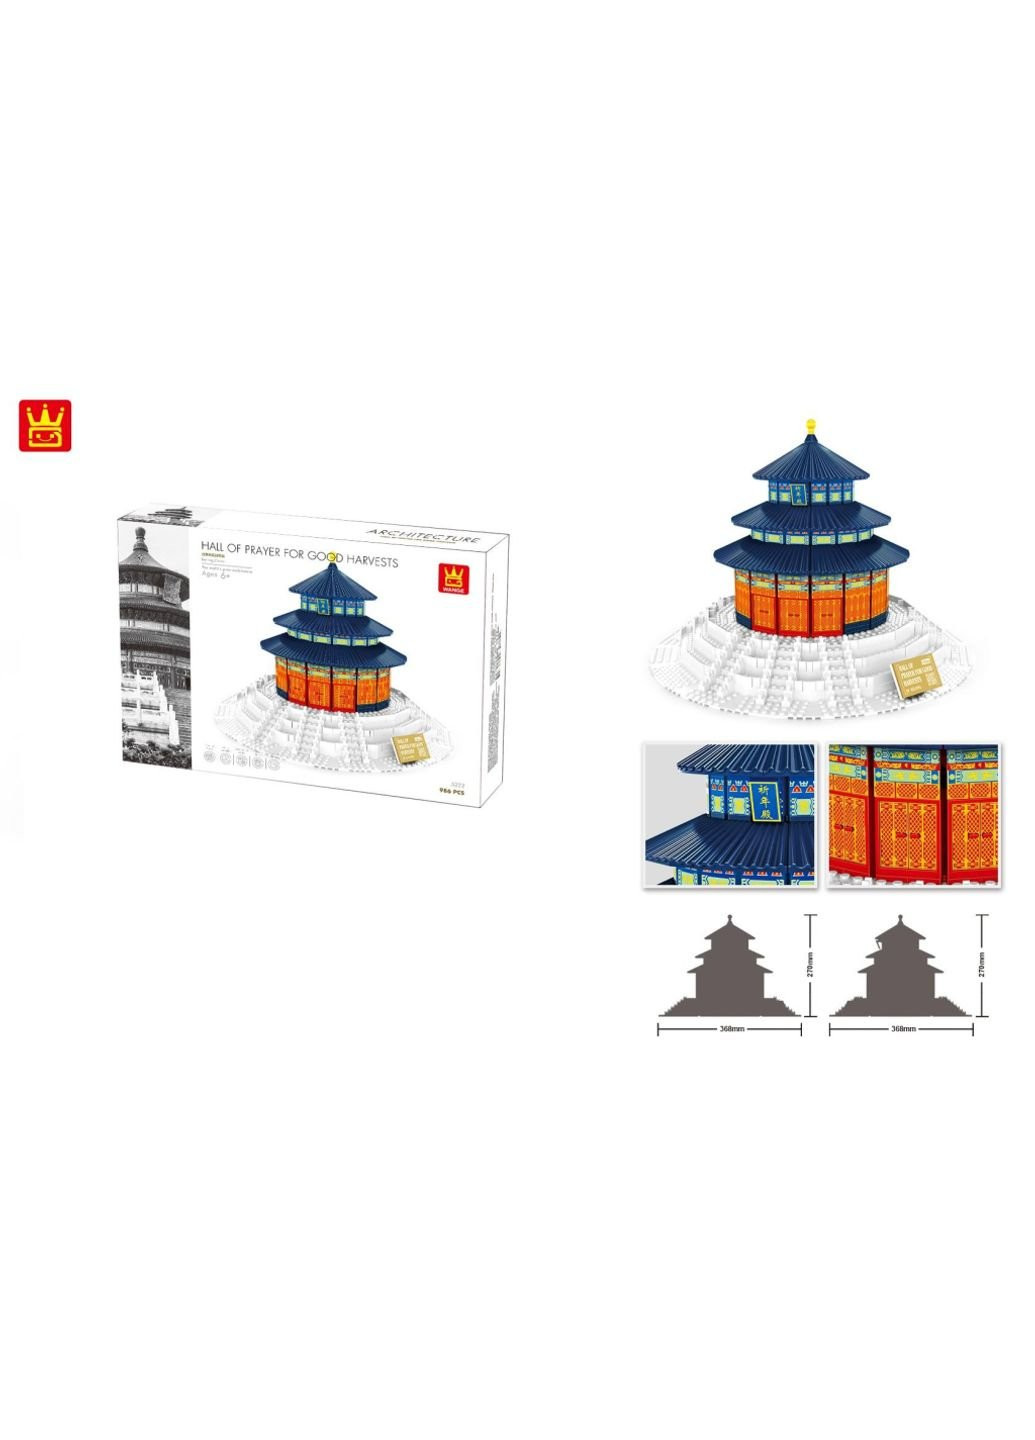 Конструктор Храм неба, Китай (WNG-Temple- Heaven) Wange (254053093)